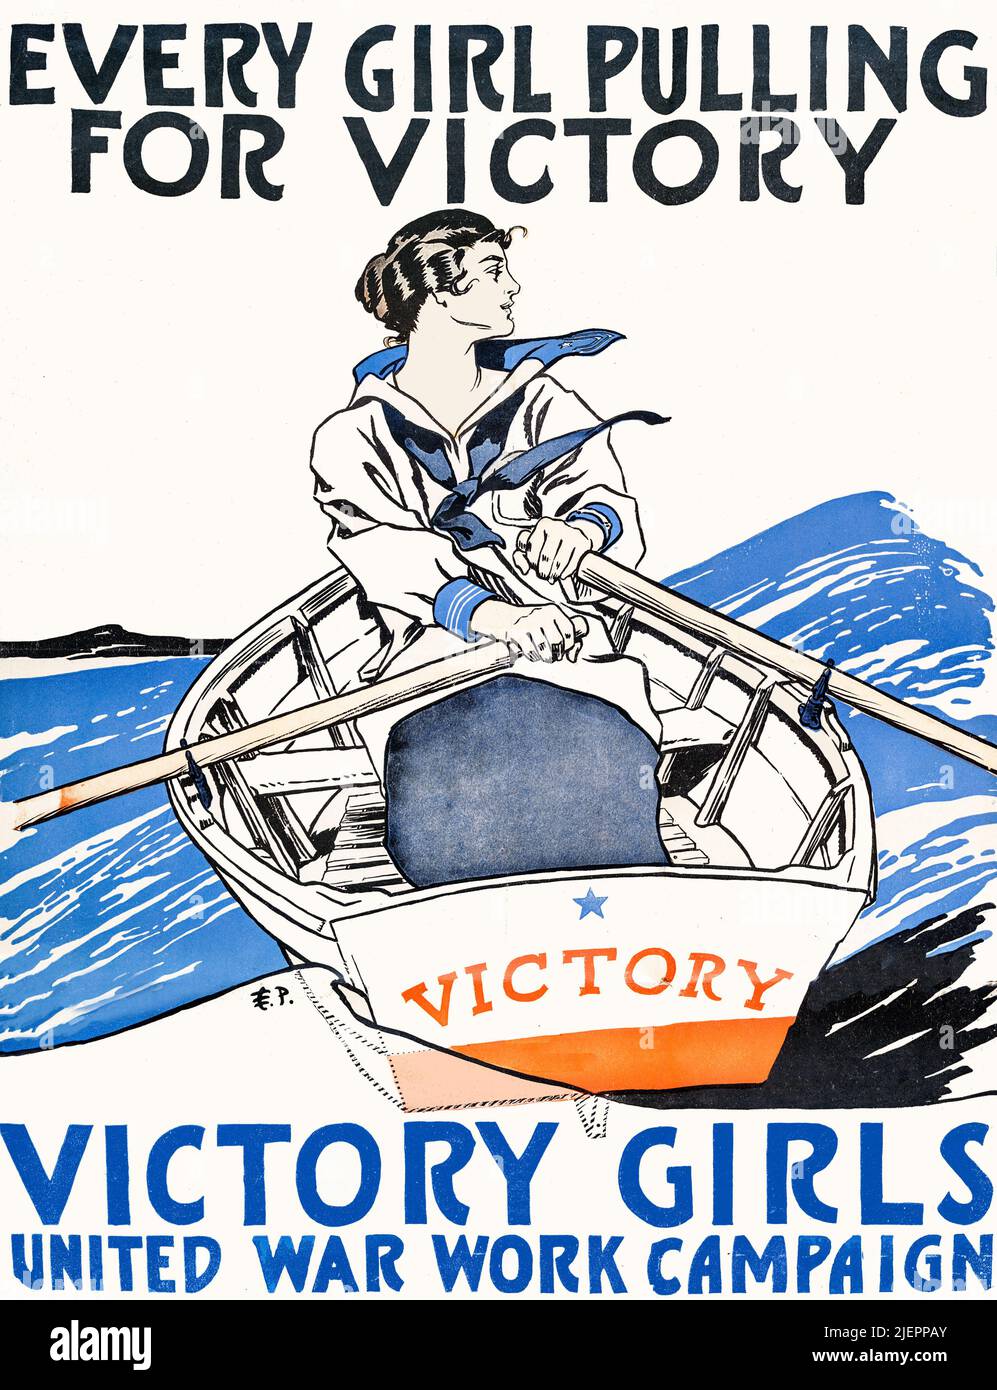 Une illustration publicitaire américaine du début du 20th siècle d'une femme ramer un bateau par Edward Penfield (1866-1925) pour promouvoir Victory Girls: Partie de la campagne de travail de la guerre unie. Banque D'Images